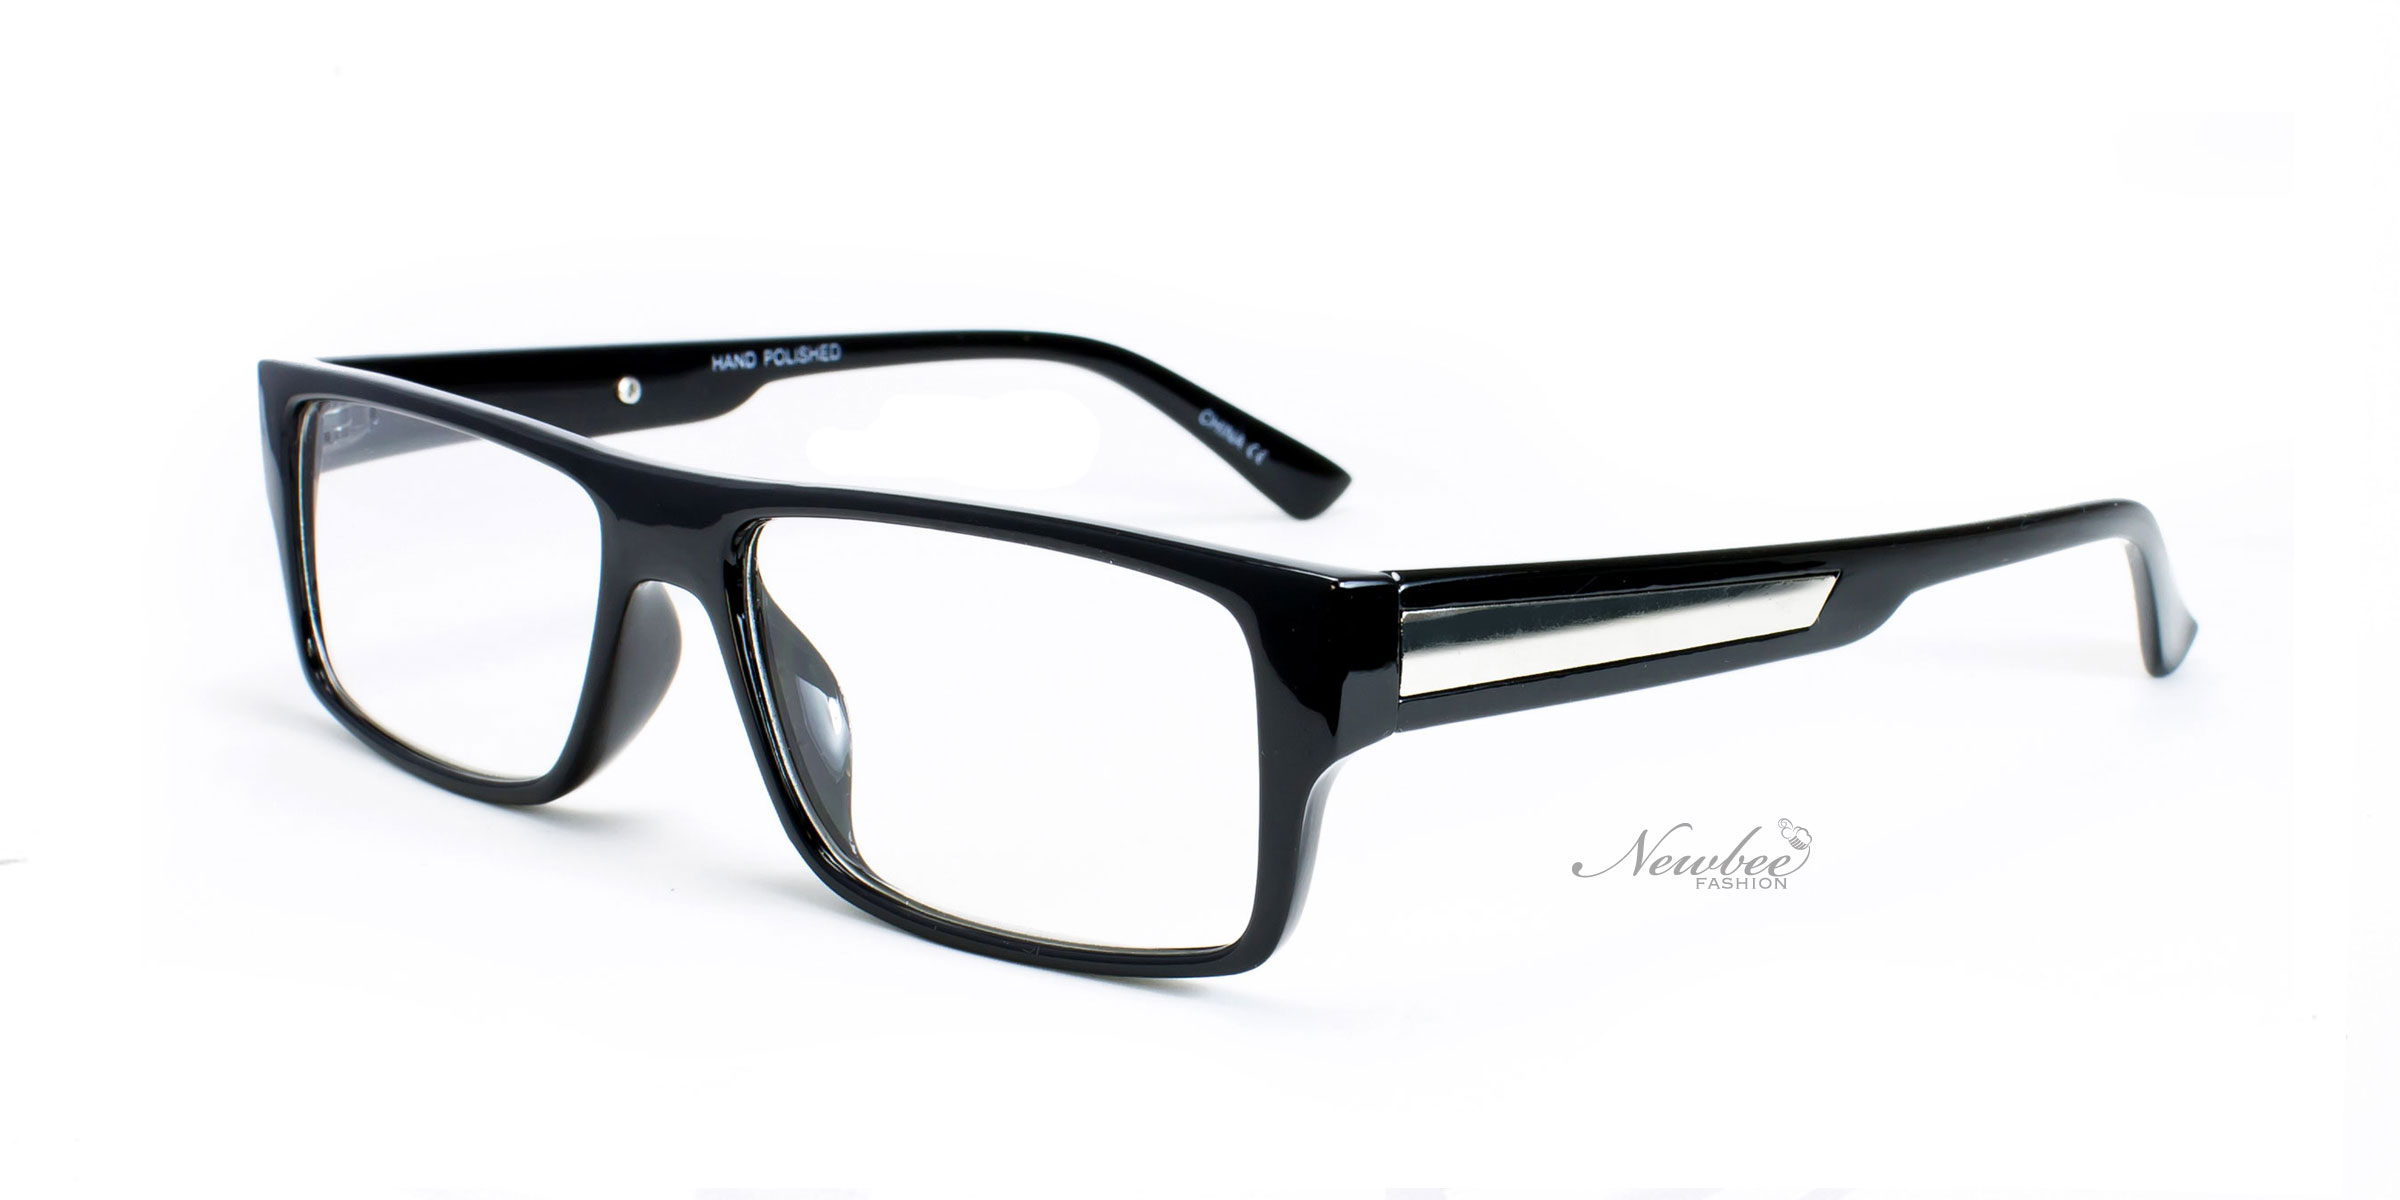 Classic Glossy Black Frame With Clear Non Prescription Lens Retro within Non Prescription Fashion Glasses